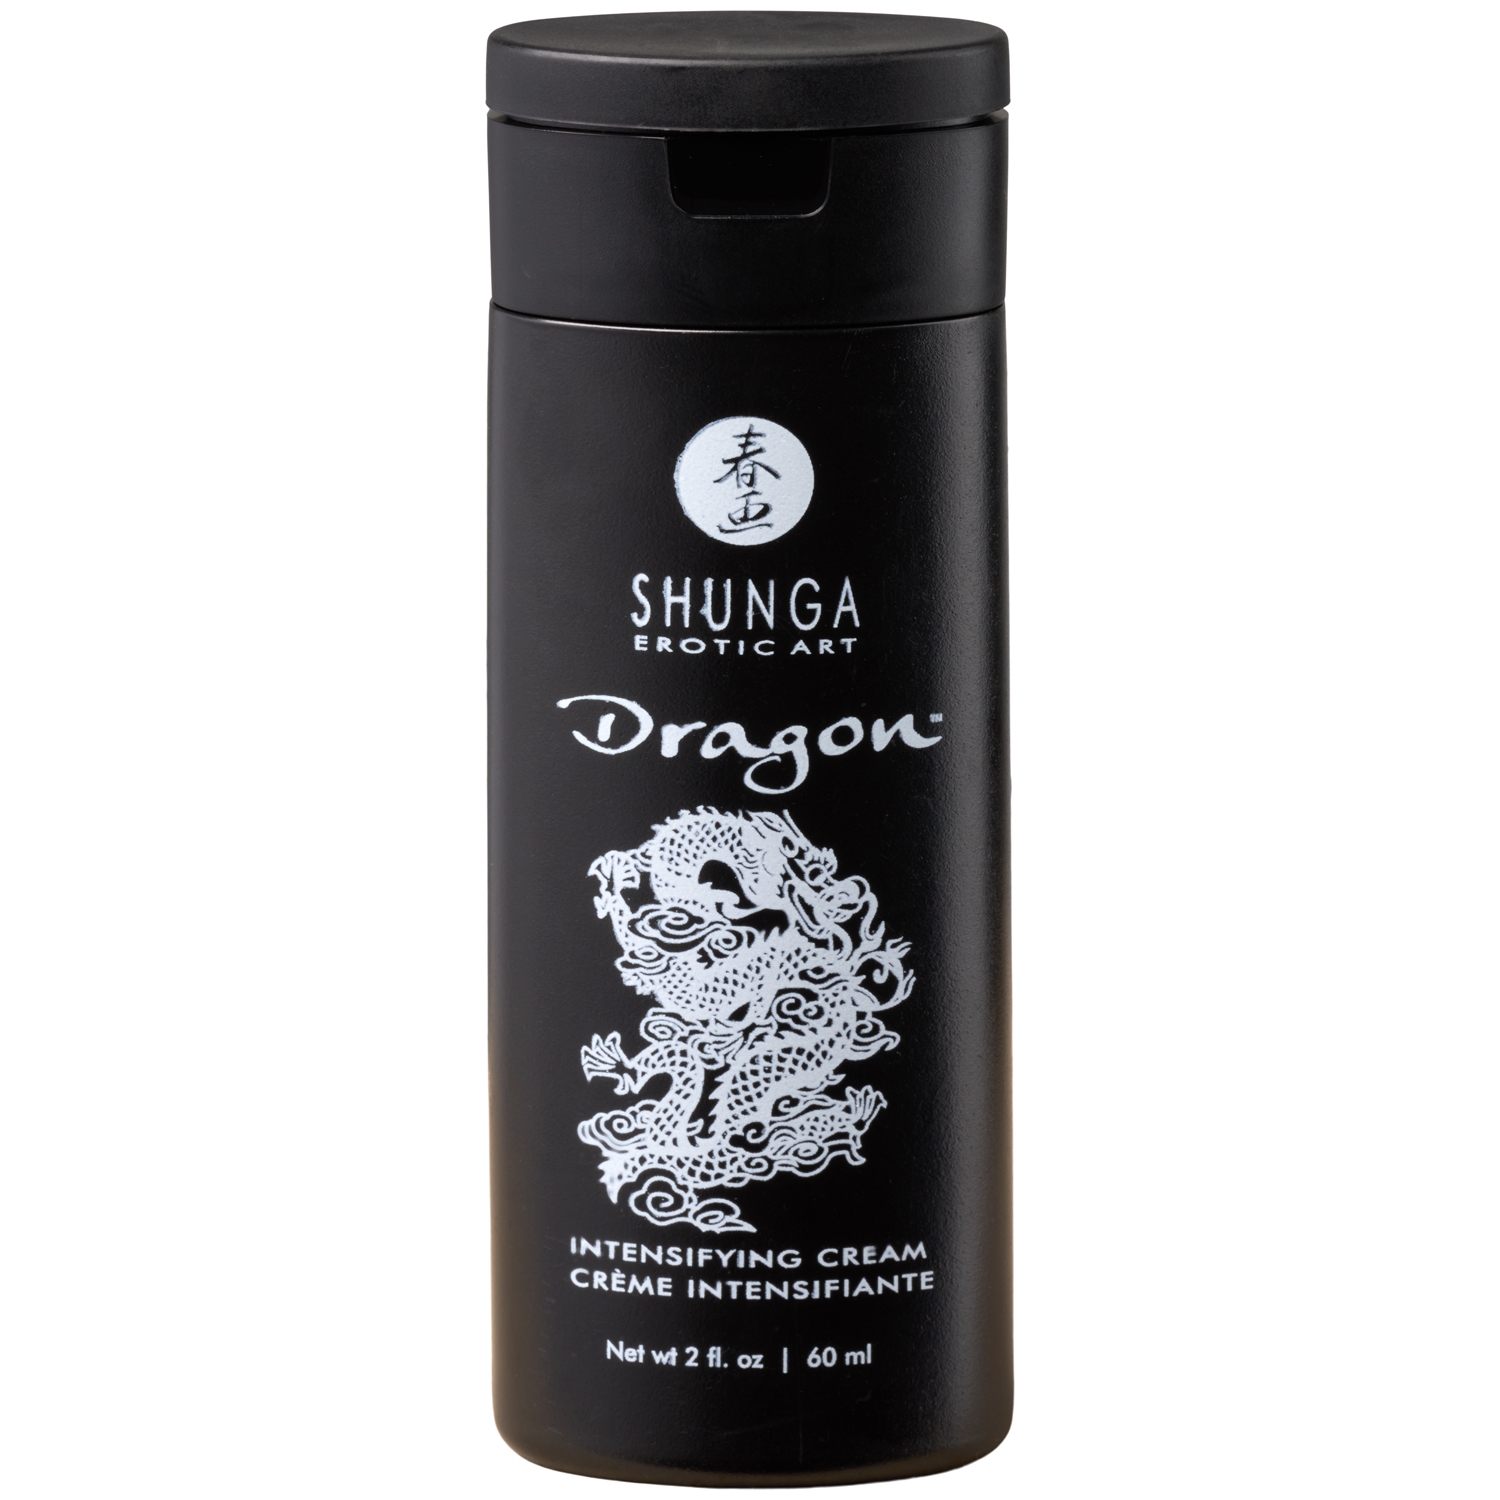 Shunga Dragon Intensifying Cream 60 ml - Klar